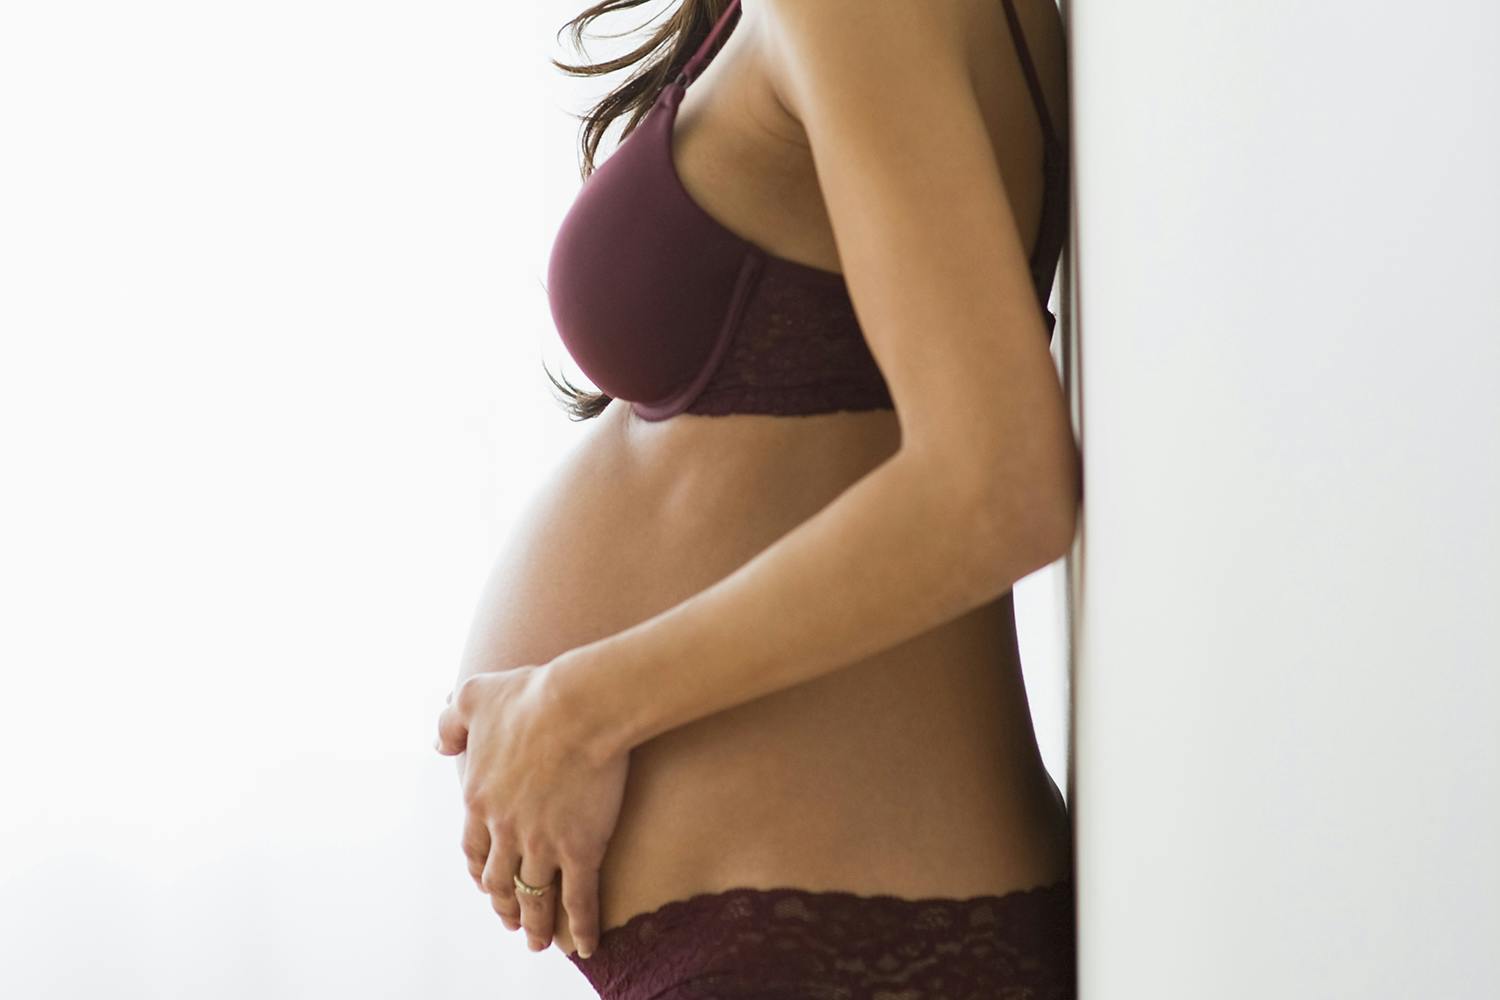 Pregnant Big Tits Erect Nipples